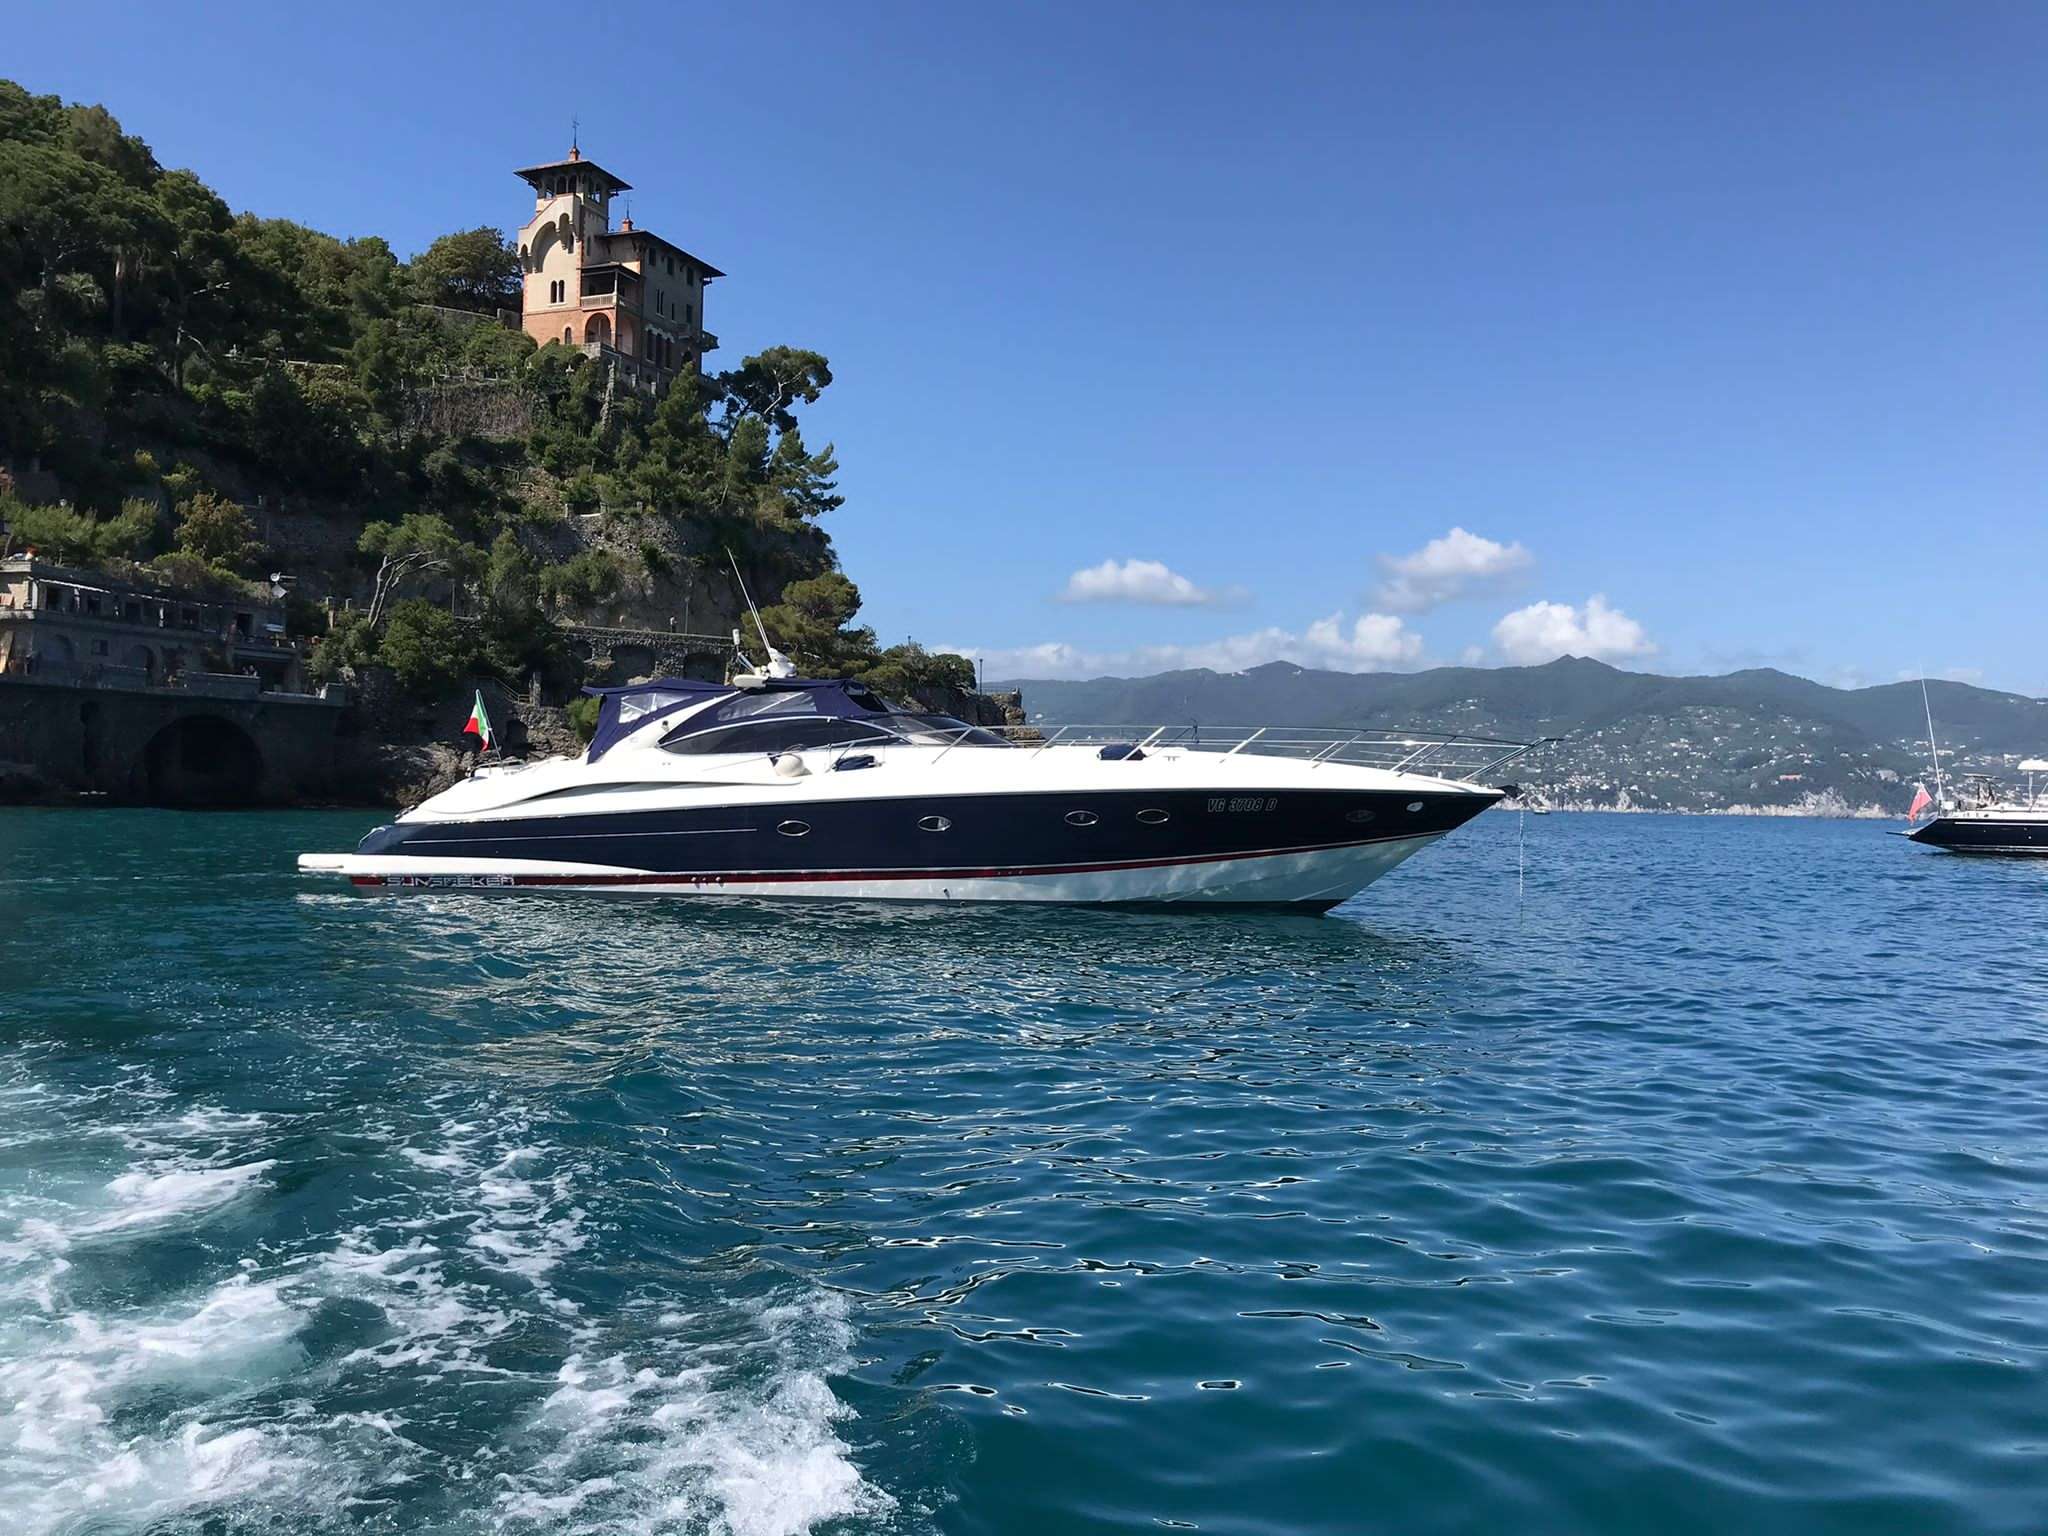 Magic Sun Sunseeker 60S - Catamaran Charter Italy & Boat hire in Fr. Riviera, Corsica & Sardinia 2